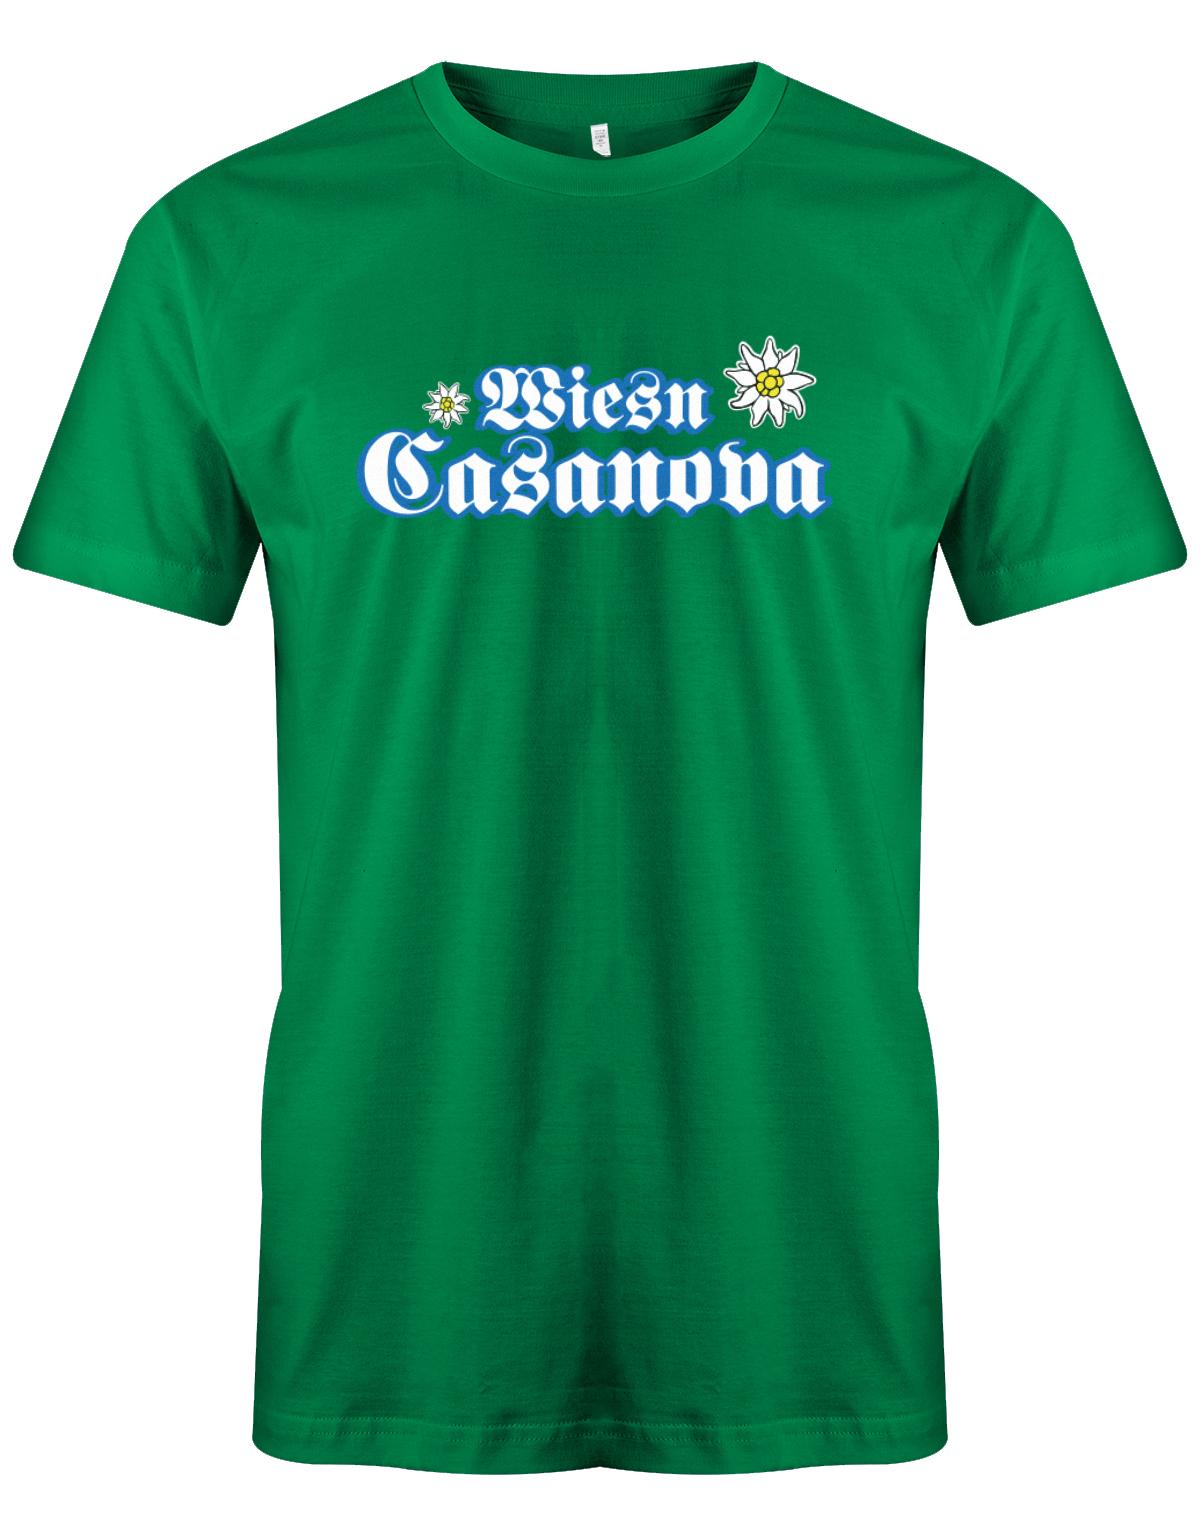 wiesn-casanova-herren-shirt-gruenTX1Sp9B4j12WJ